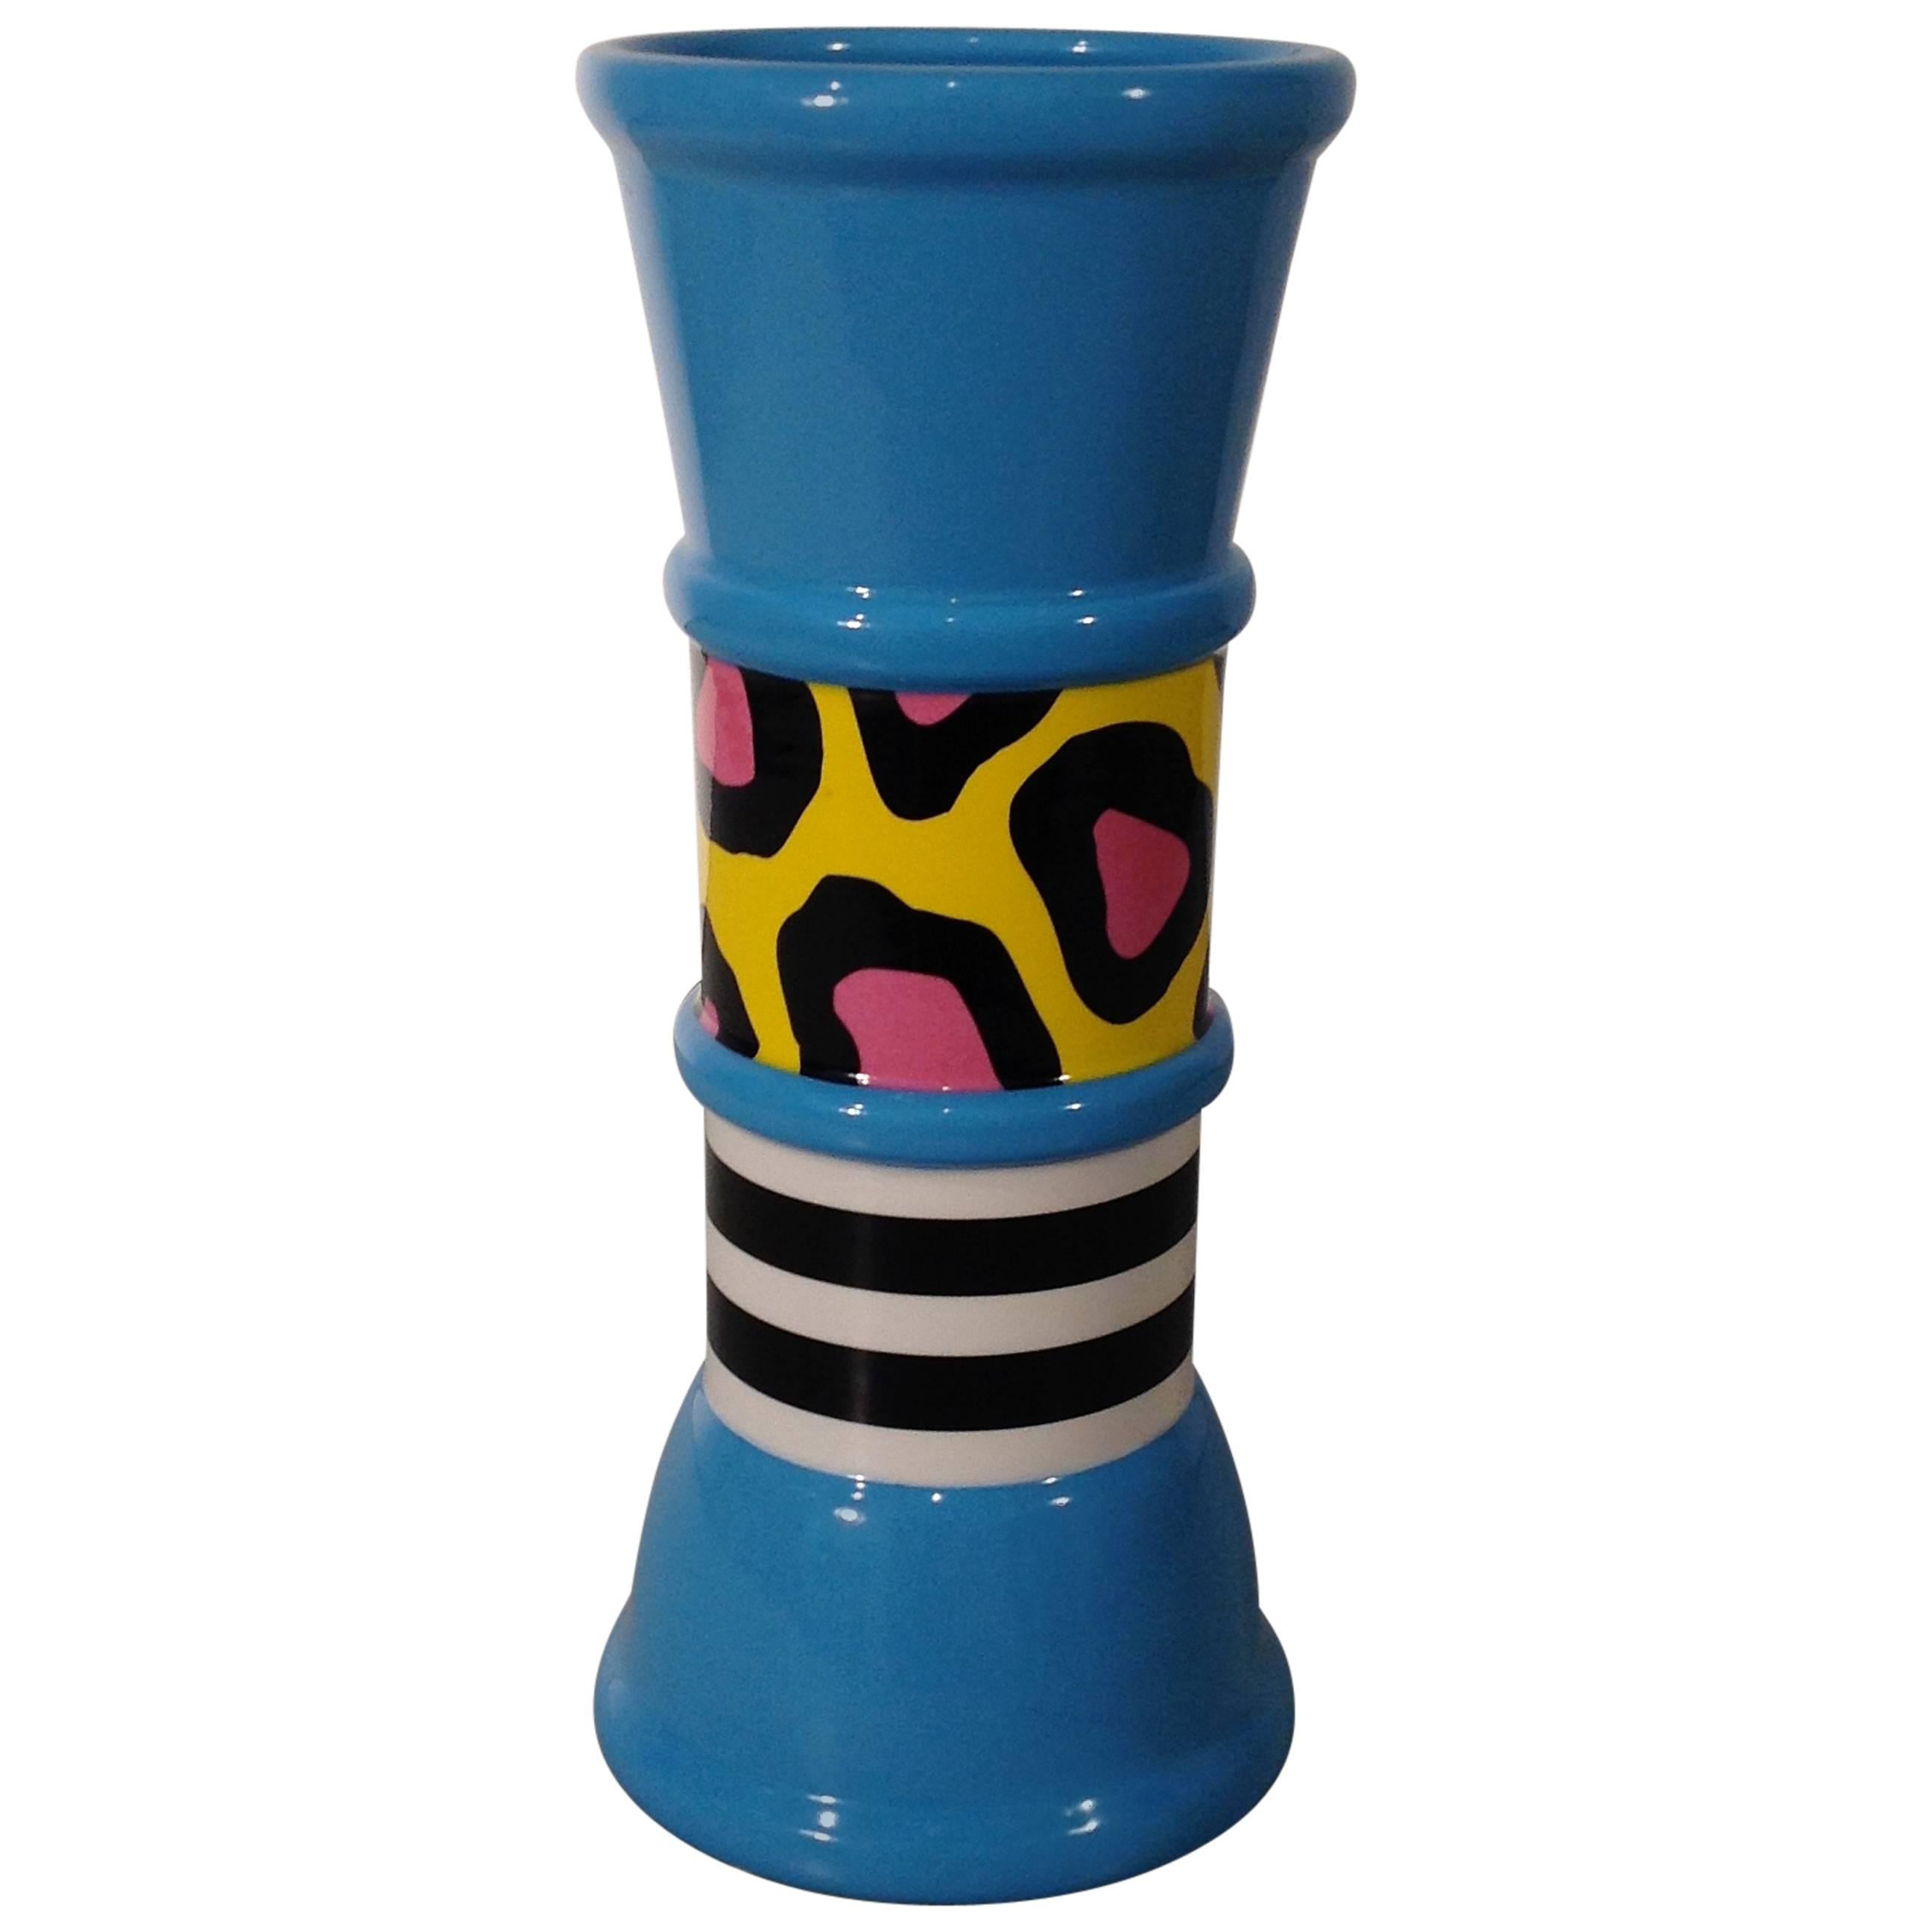 CARROT Ceramic Flower Vase by Nathalie du Pasquier for Memphis Milano For Sale